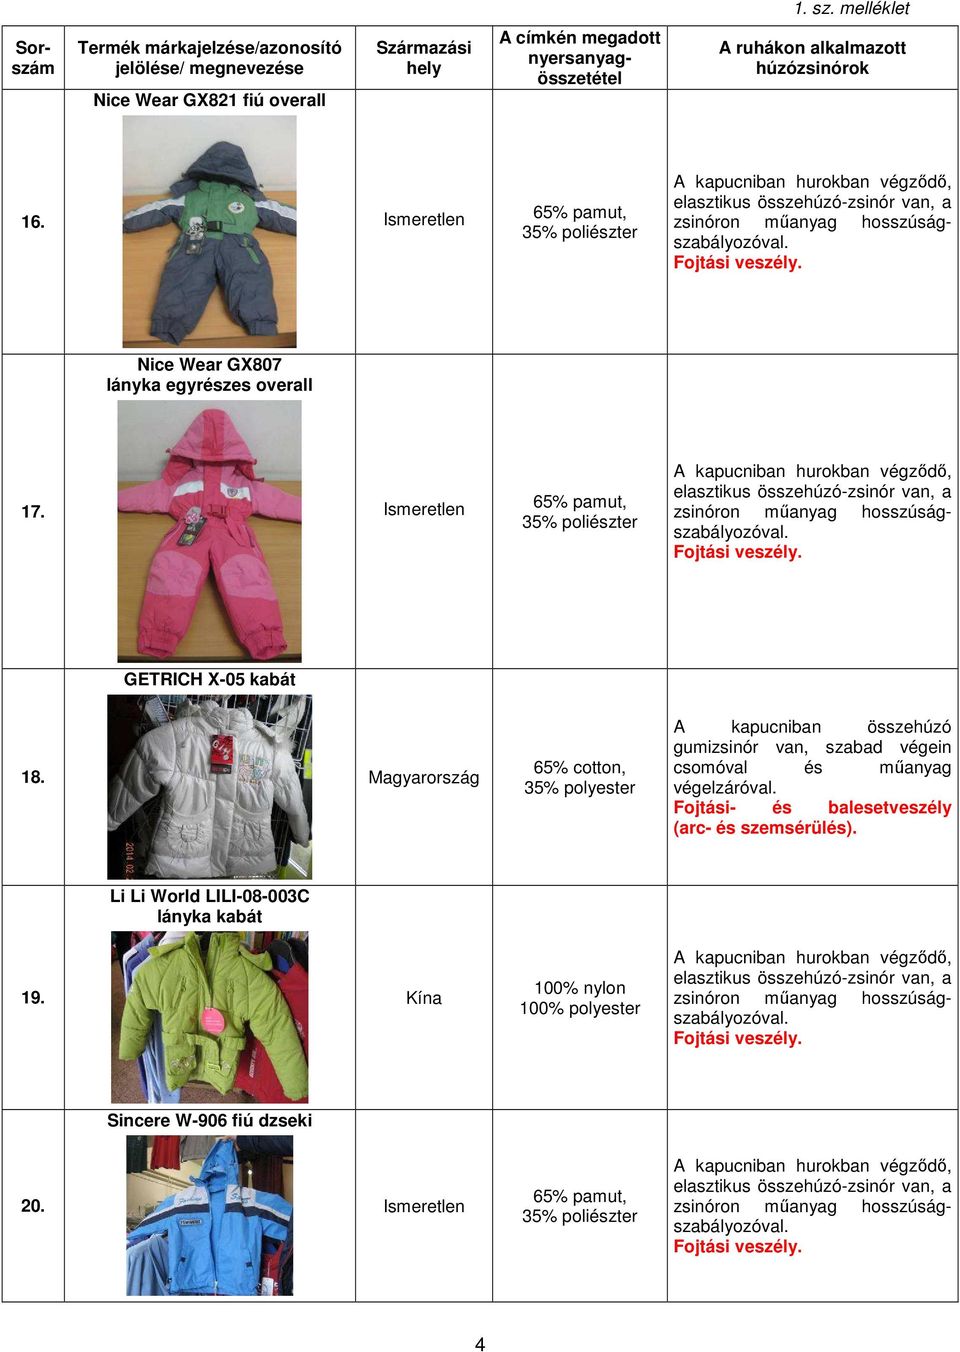 Magyarország 65% cotton, 35% polyester csomóval és műanyag végelzáróval. Li Li World LILI-08-003C lányka kabát 19.